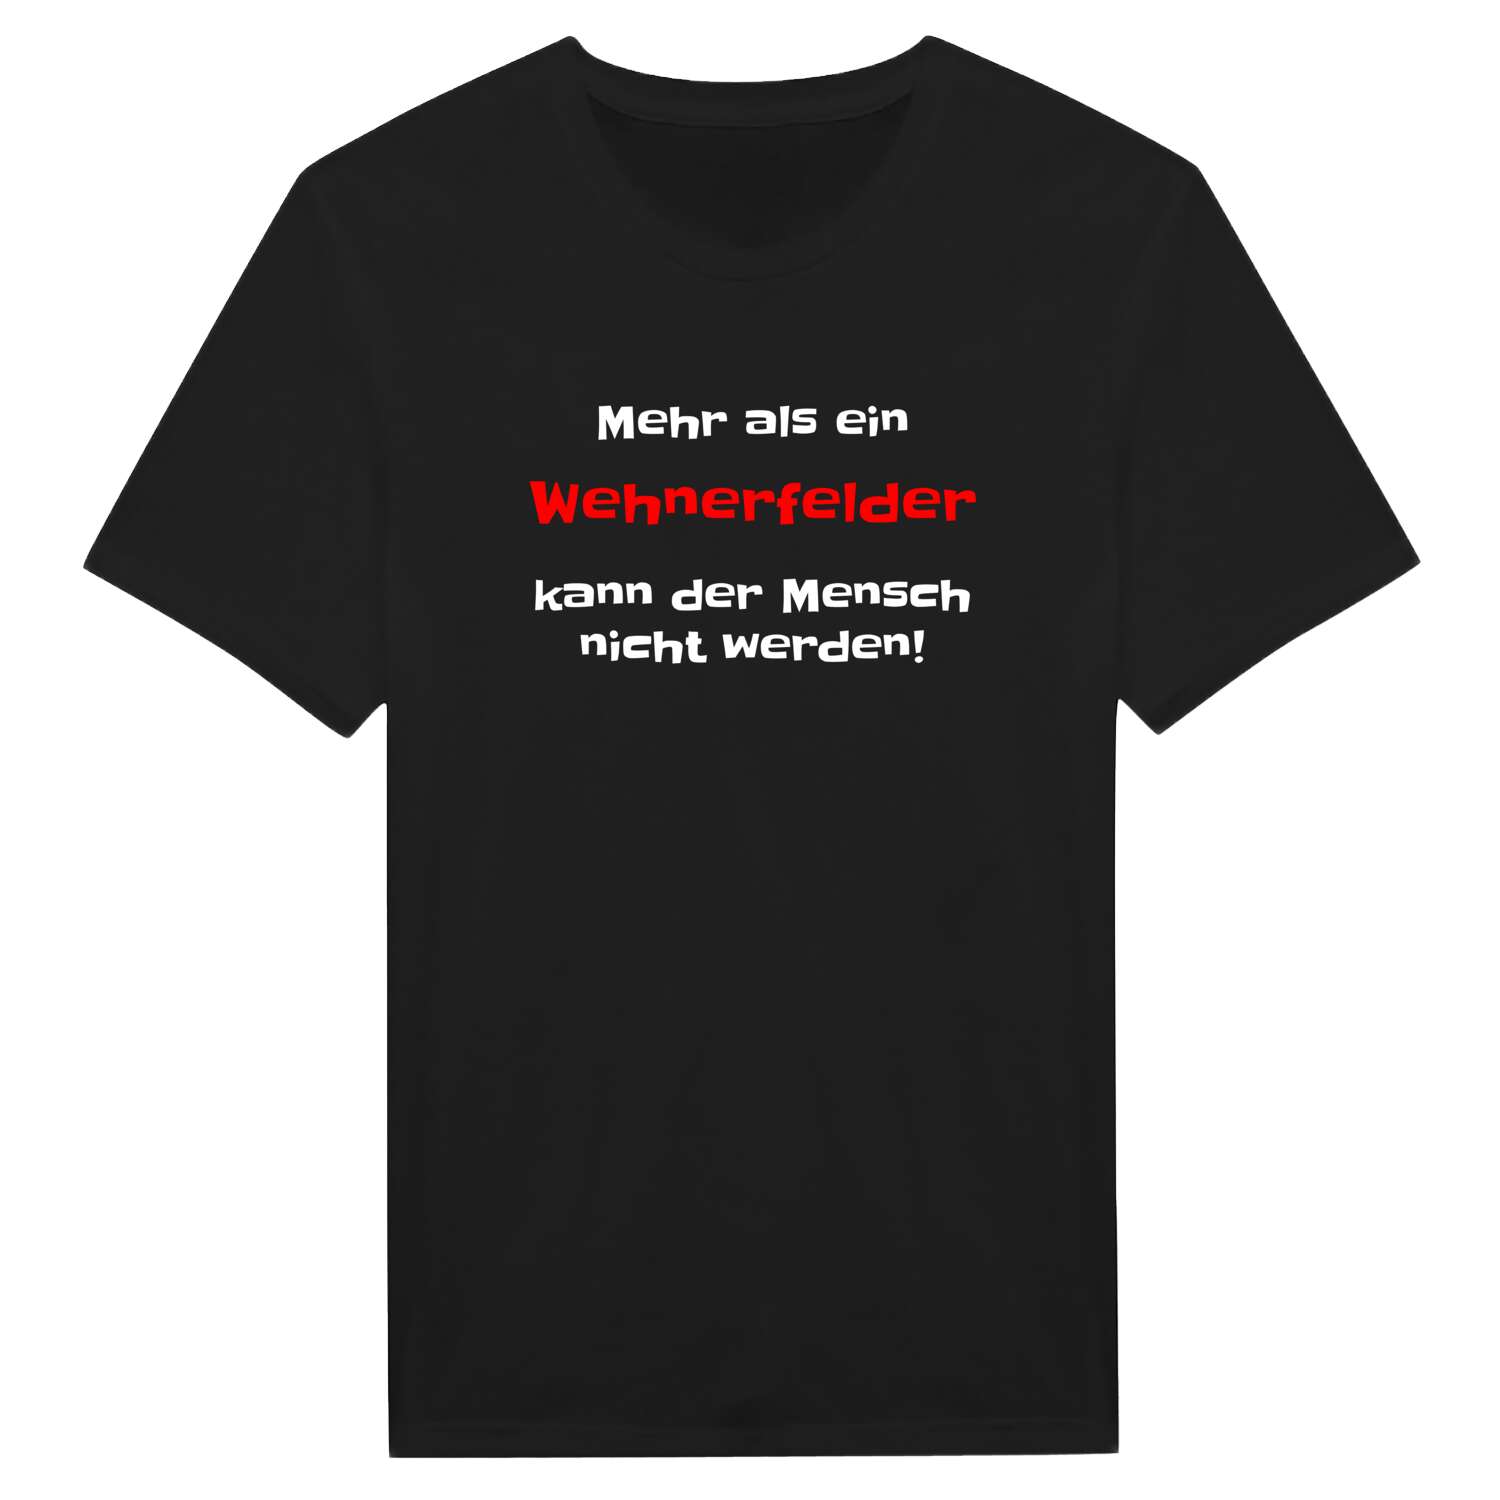 Wehnerfeld T-Shirt »Mehr als ein«